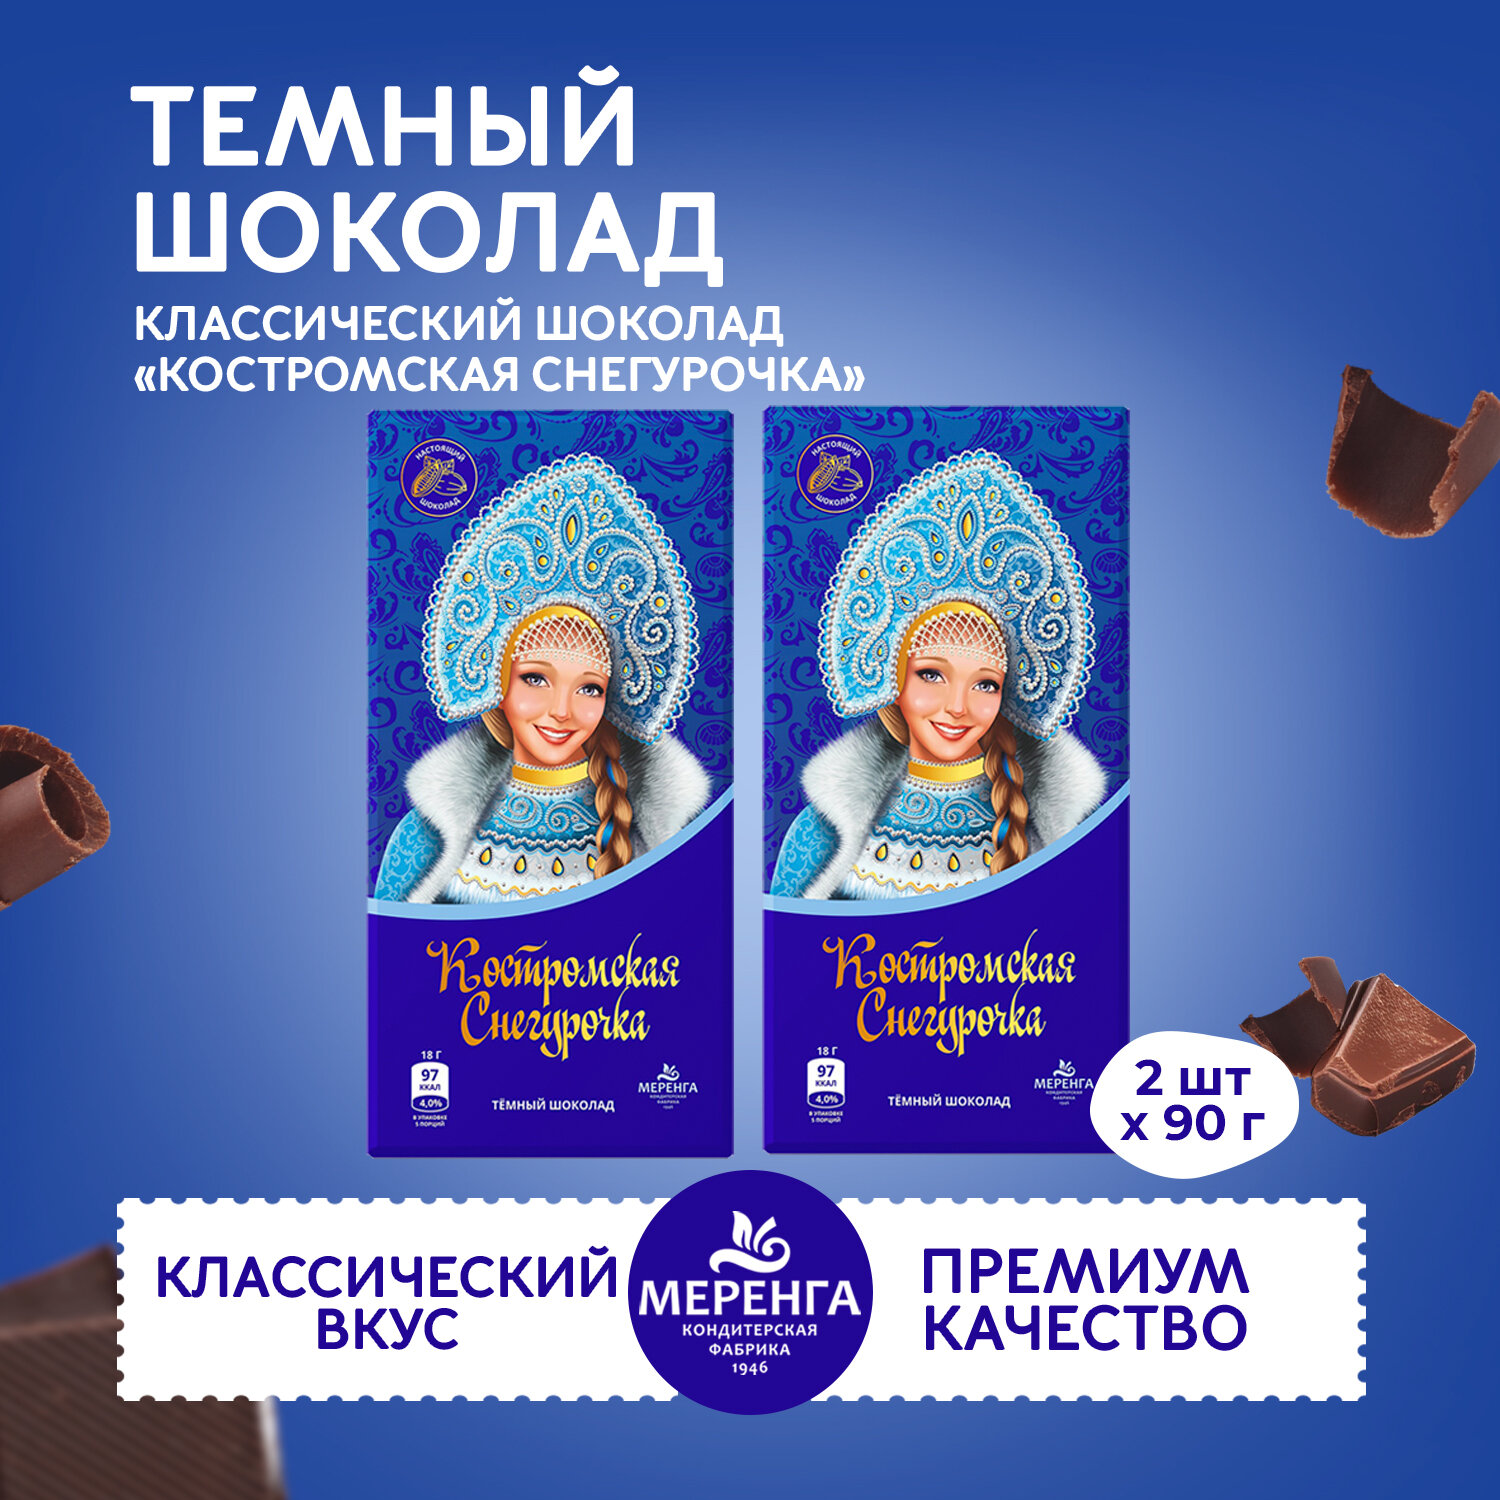 Шоколад темный "Костромская Снегурочка" 2 штуки